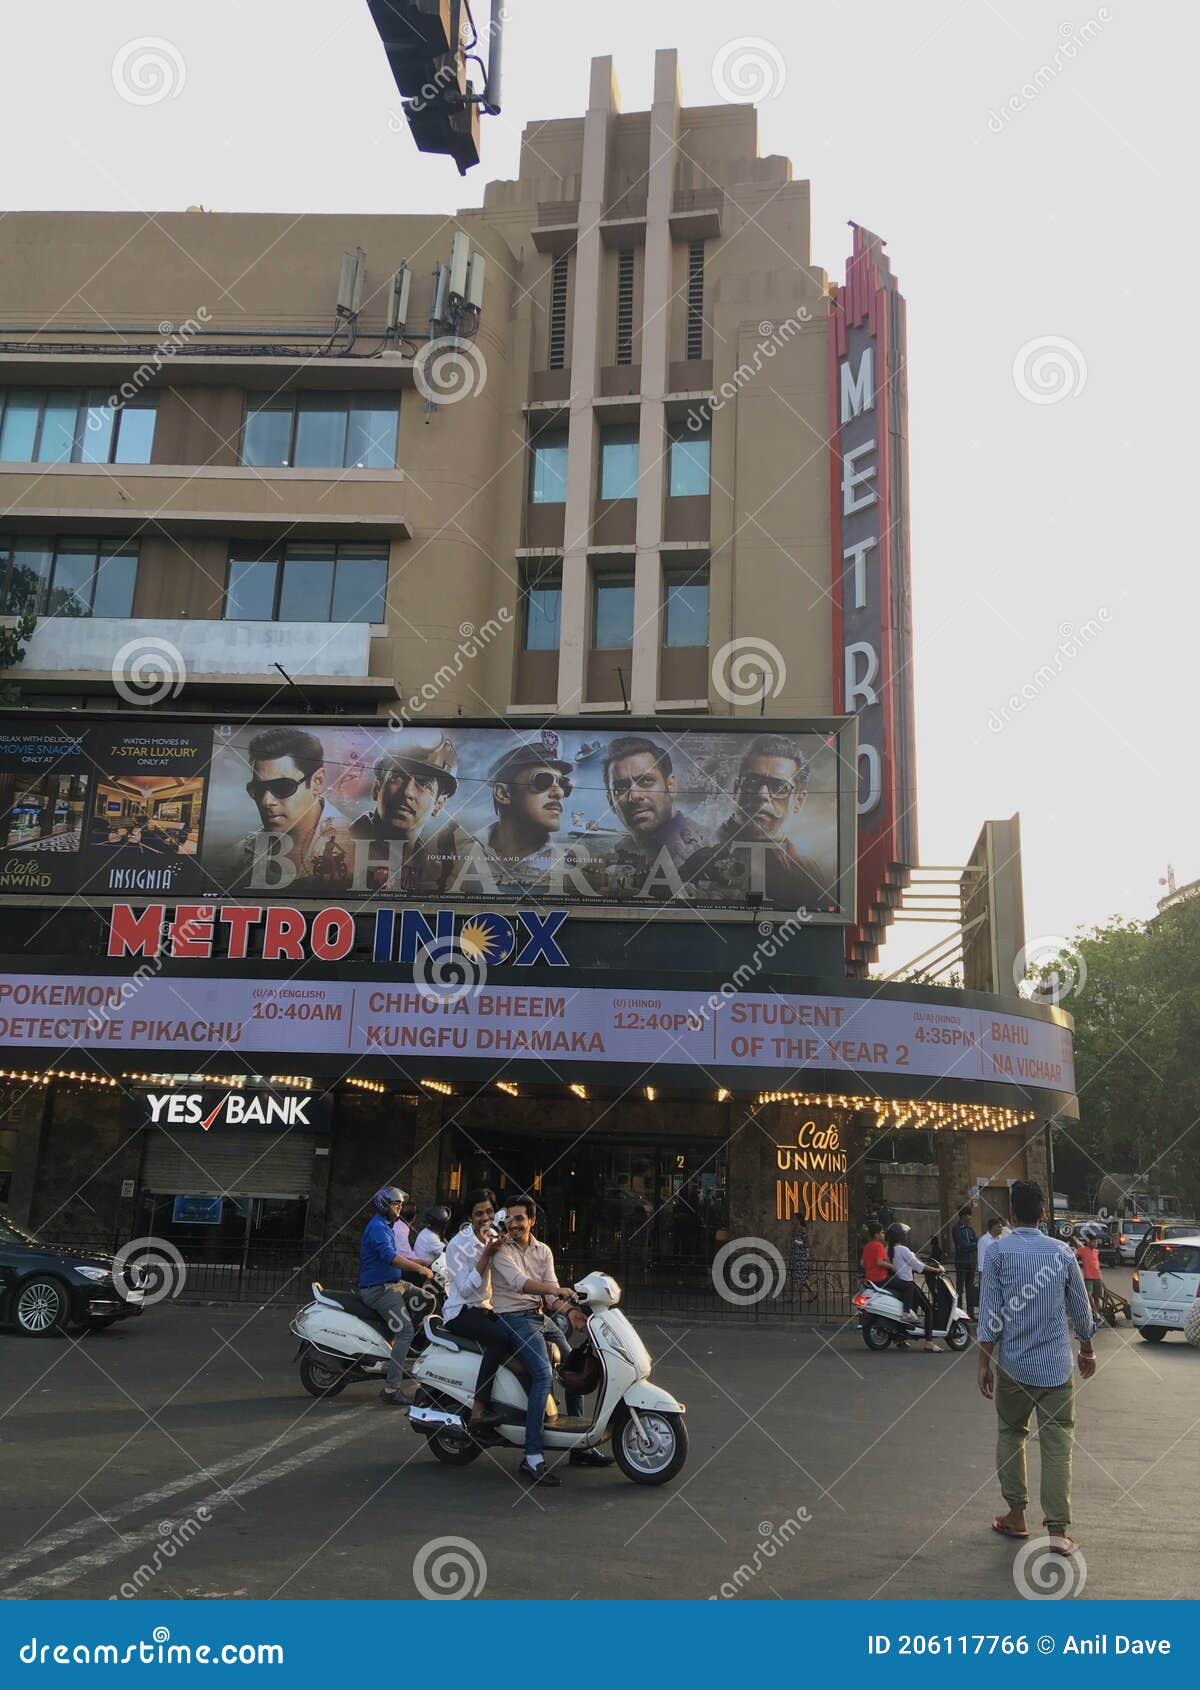 31 Mar 2019 Metro Cinema is Art Deco Heritage Movie theatre in Mumbai built in 1938 in Mumbai Maharashtra INDIA